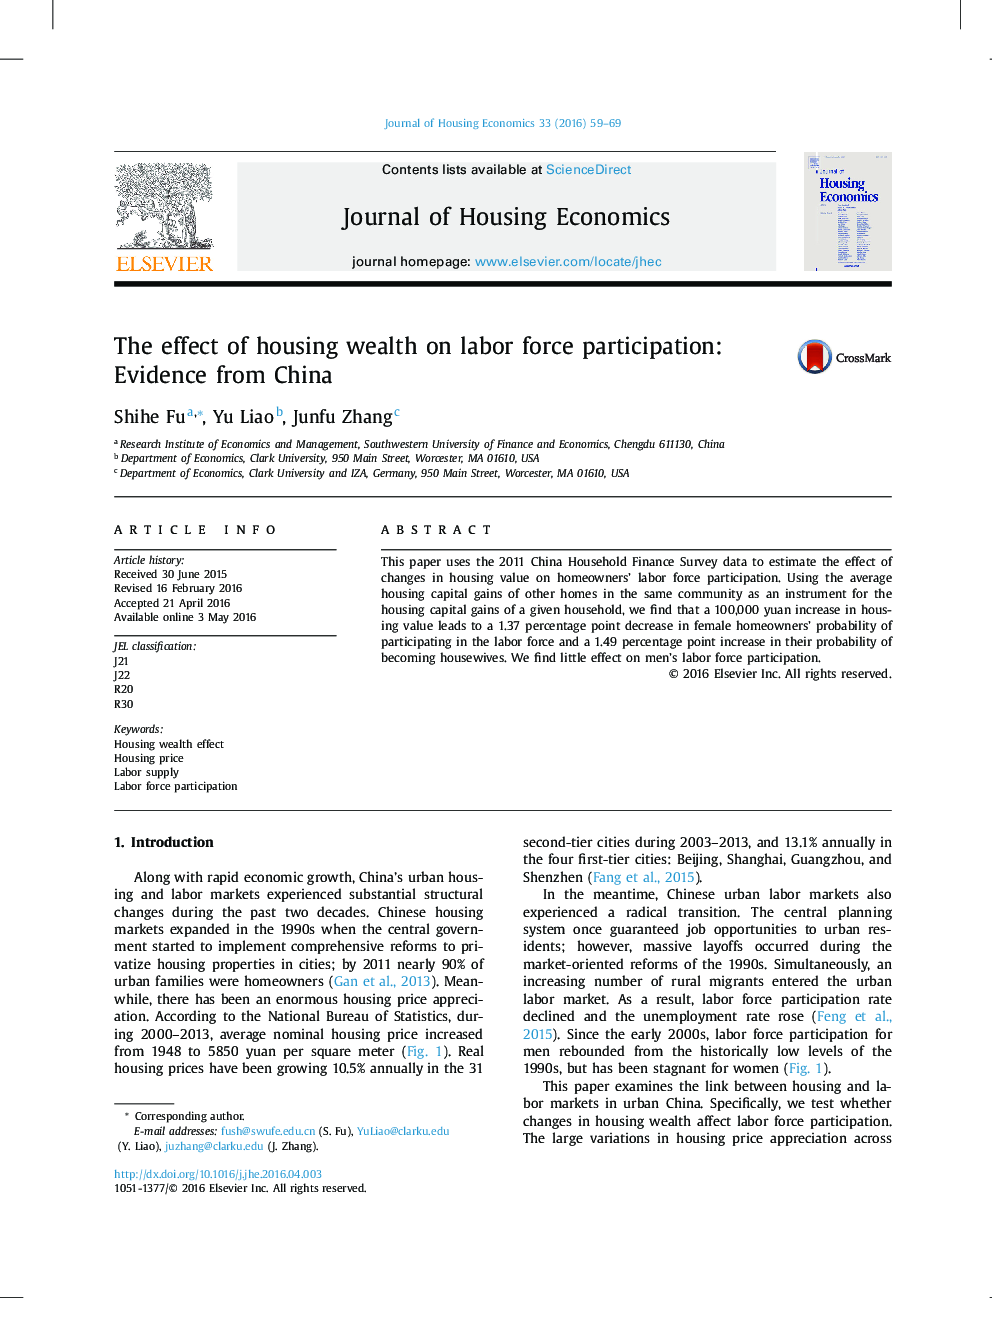 تأثیر ثروت مسکن در مشارکت نیروی کار: شواهد از چین 